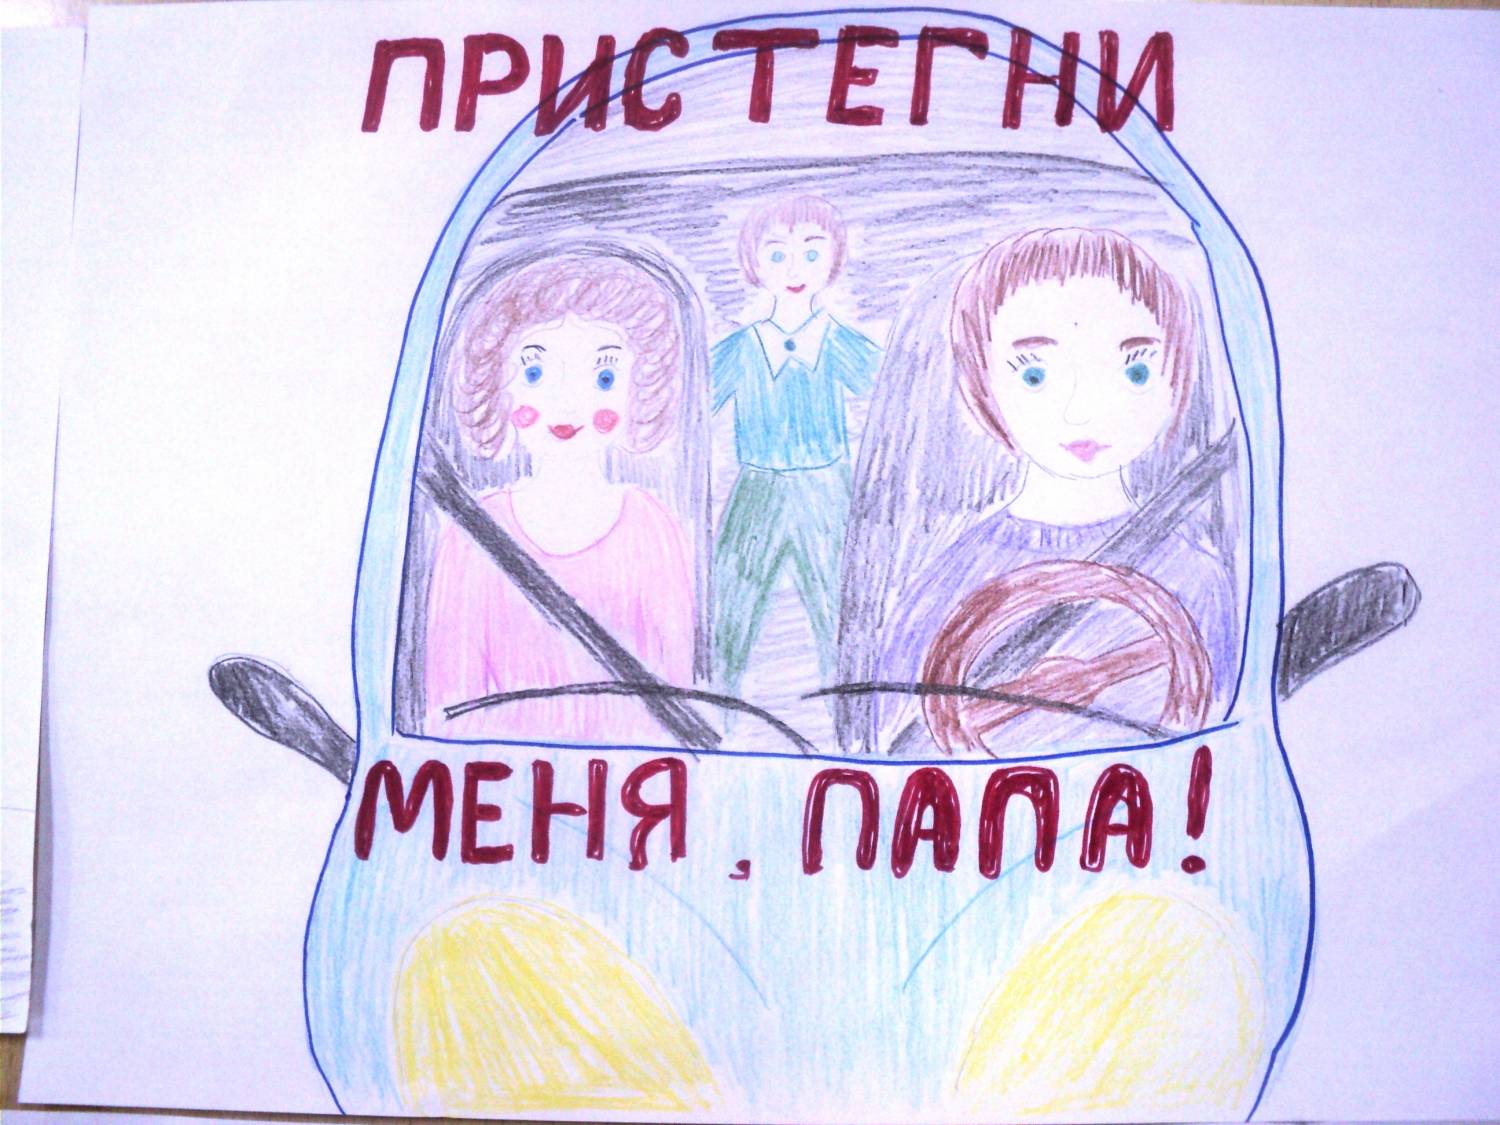 Нарисовать безопасность в транспорте. Ребёнок главный пассажир рисунок. Плакат призывающий к соблюдению правил безопасности в транспорте. Рисунок на тему ребенок главный пассажир. Плакат кобоюдение правилбезопвсности в траснпопте.